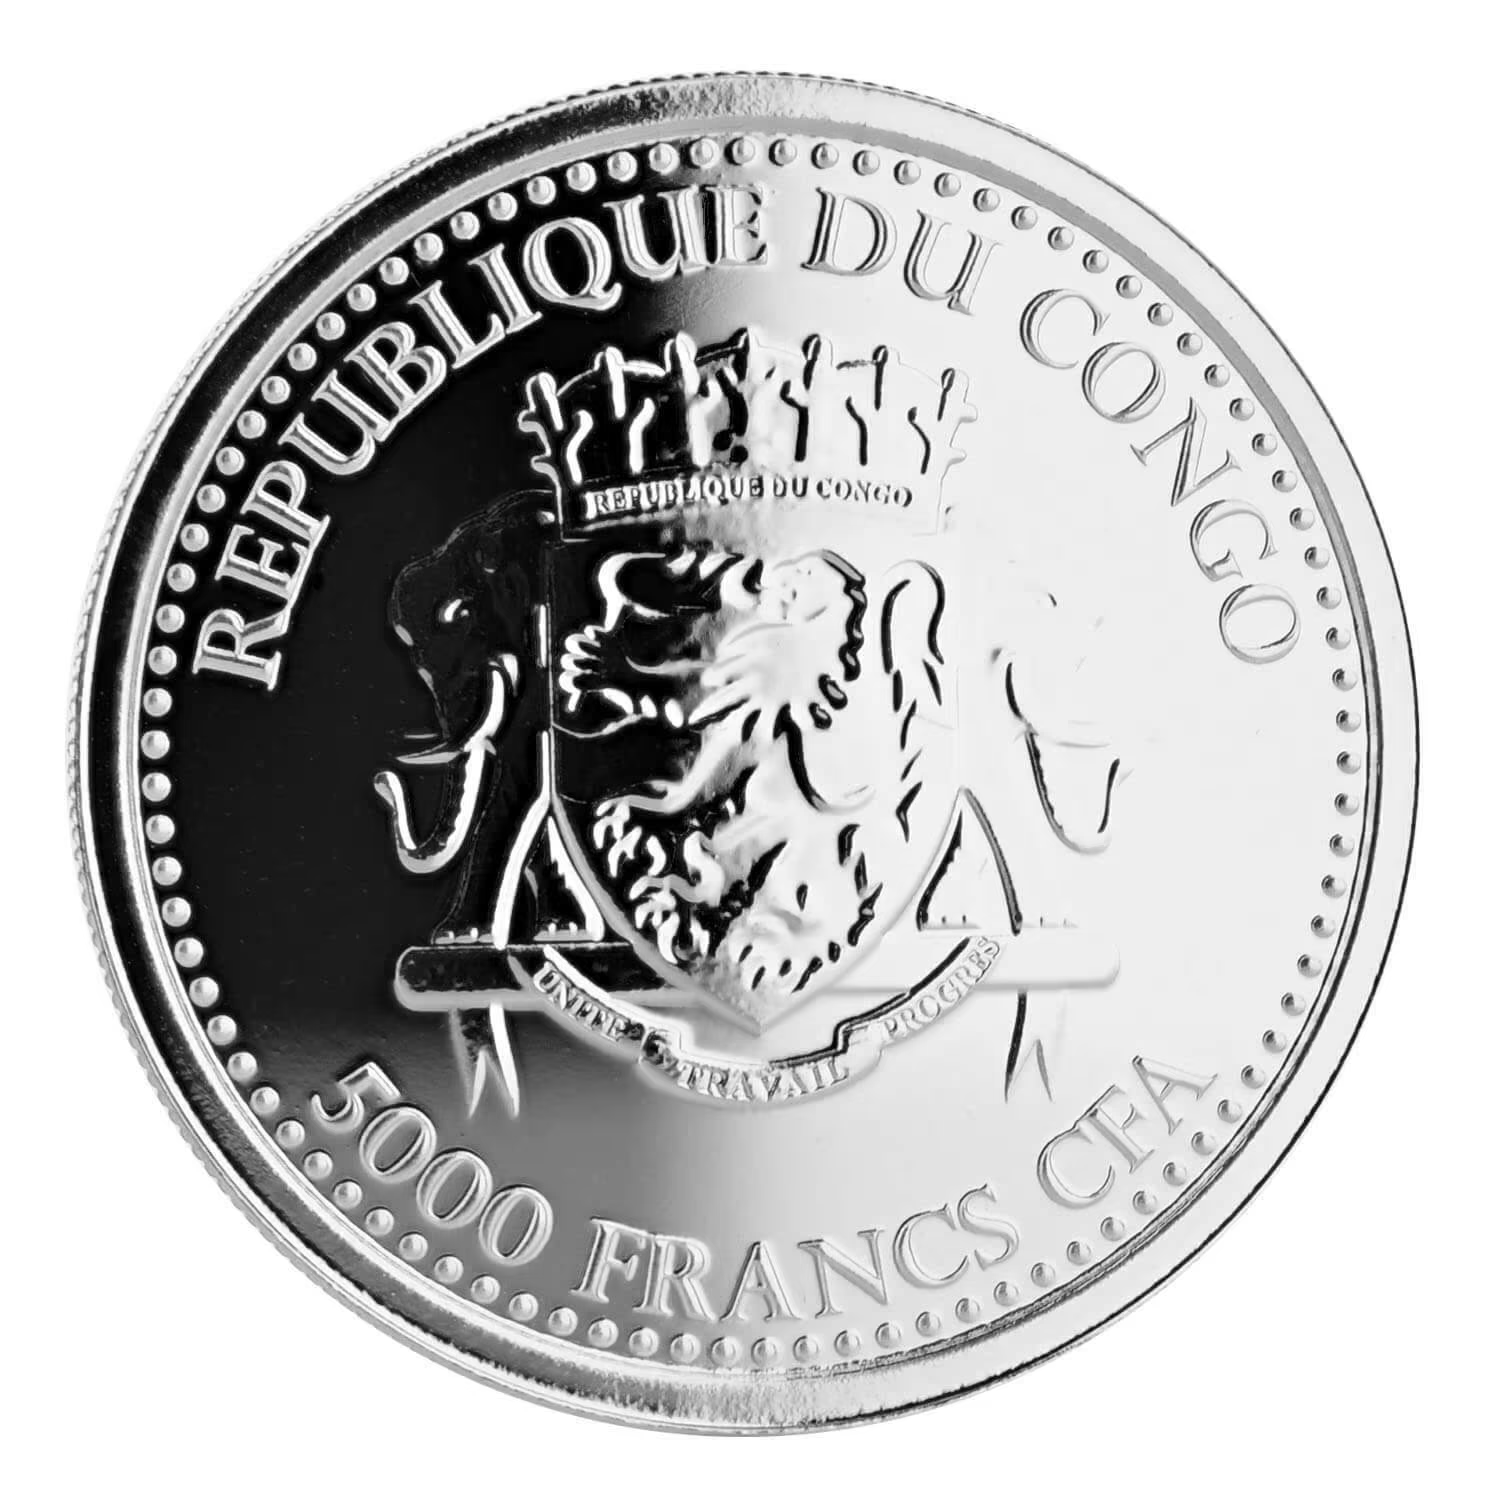 1 Oz Silver Coin 2016 5000 CFA Francs Congo Scottsdale Color Silverback Gorilla-classypw.com-1